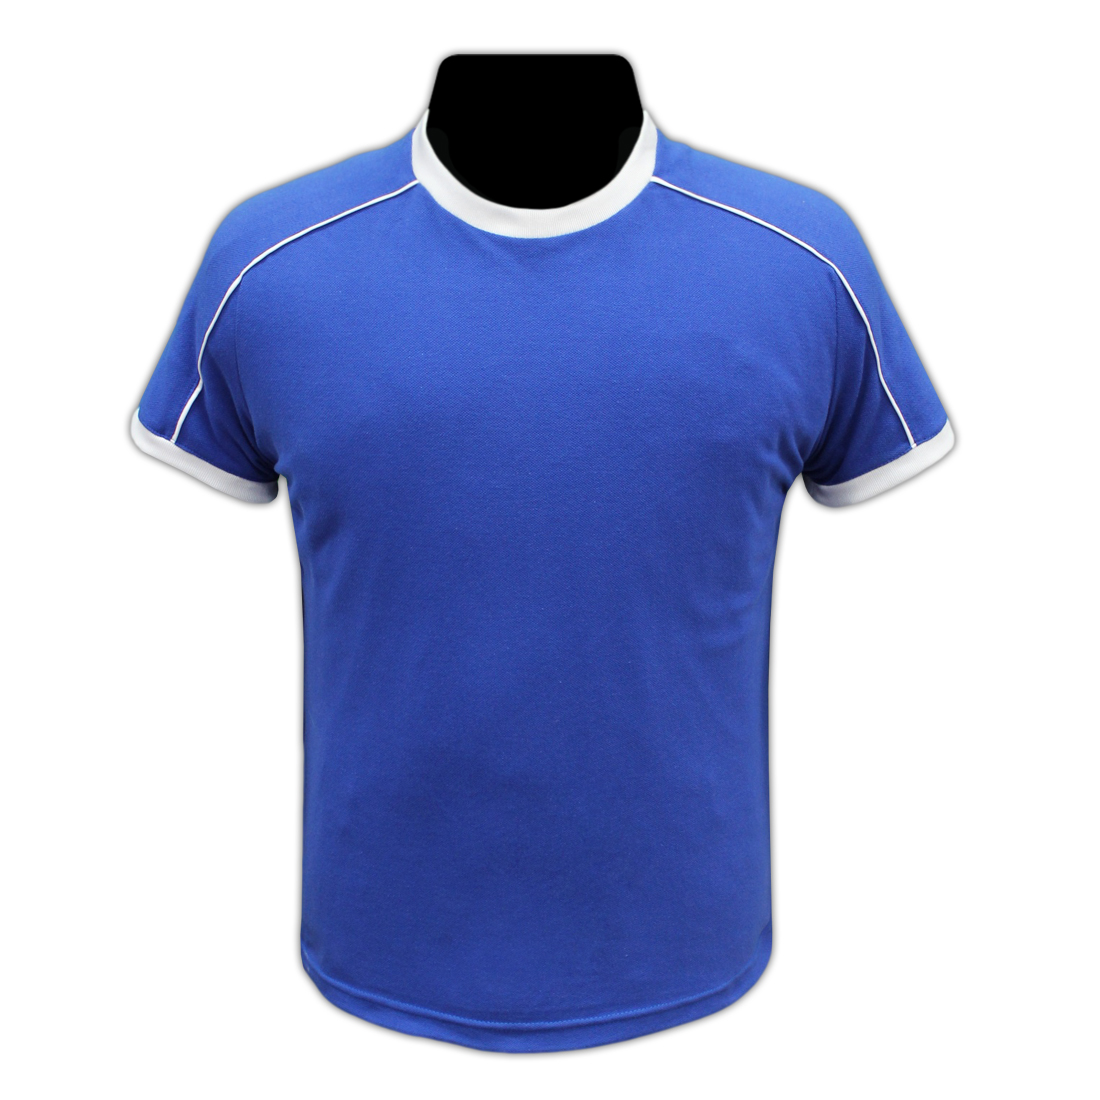 Купить синюю майку. Футбольная майка. Футболка мужская футбольная. Синяя футбольная футболка. Синие футболки для футбола.